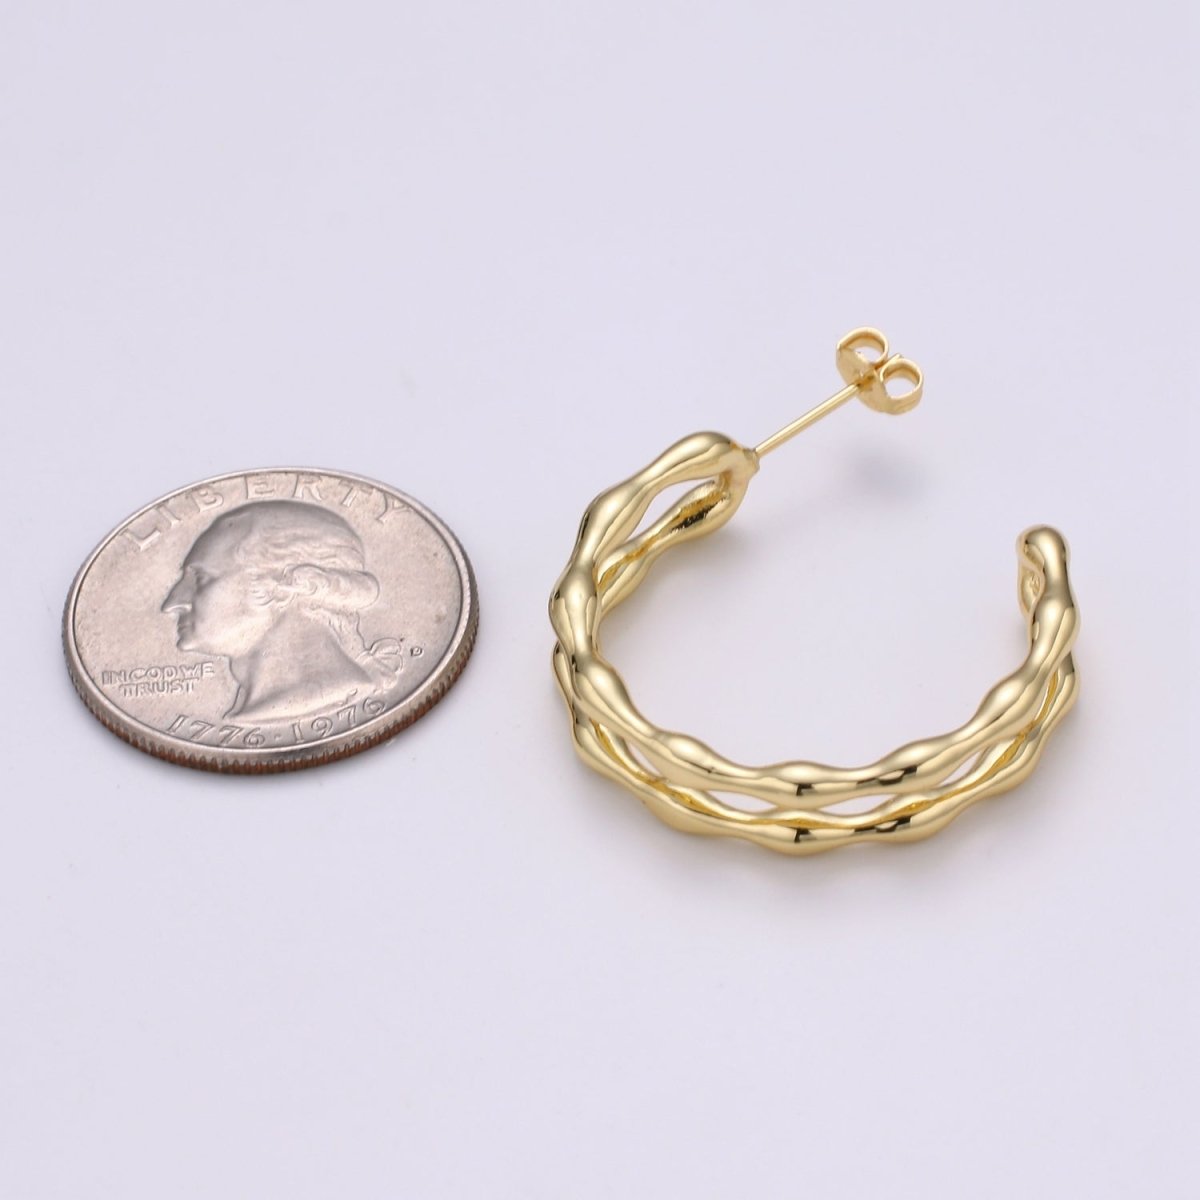 24k Gold Hoop Earring Jewelry, Chunky Hoop Earrings, Gold Hammered Hoops, 28x33mm Hoop Earrings Q-426 - DLUXCA